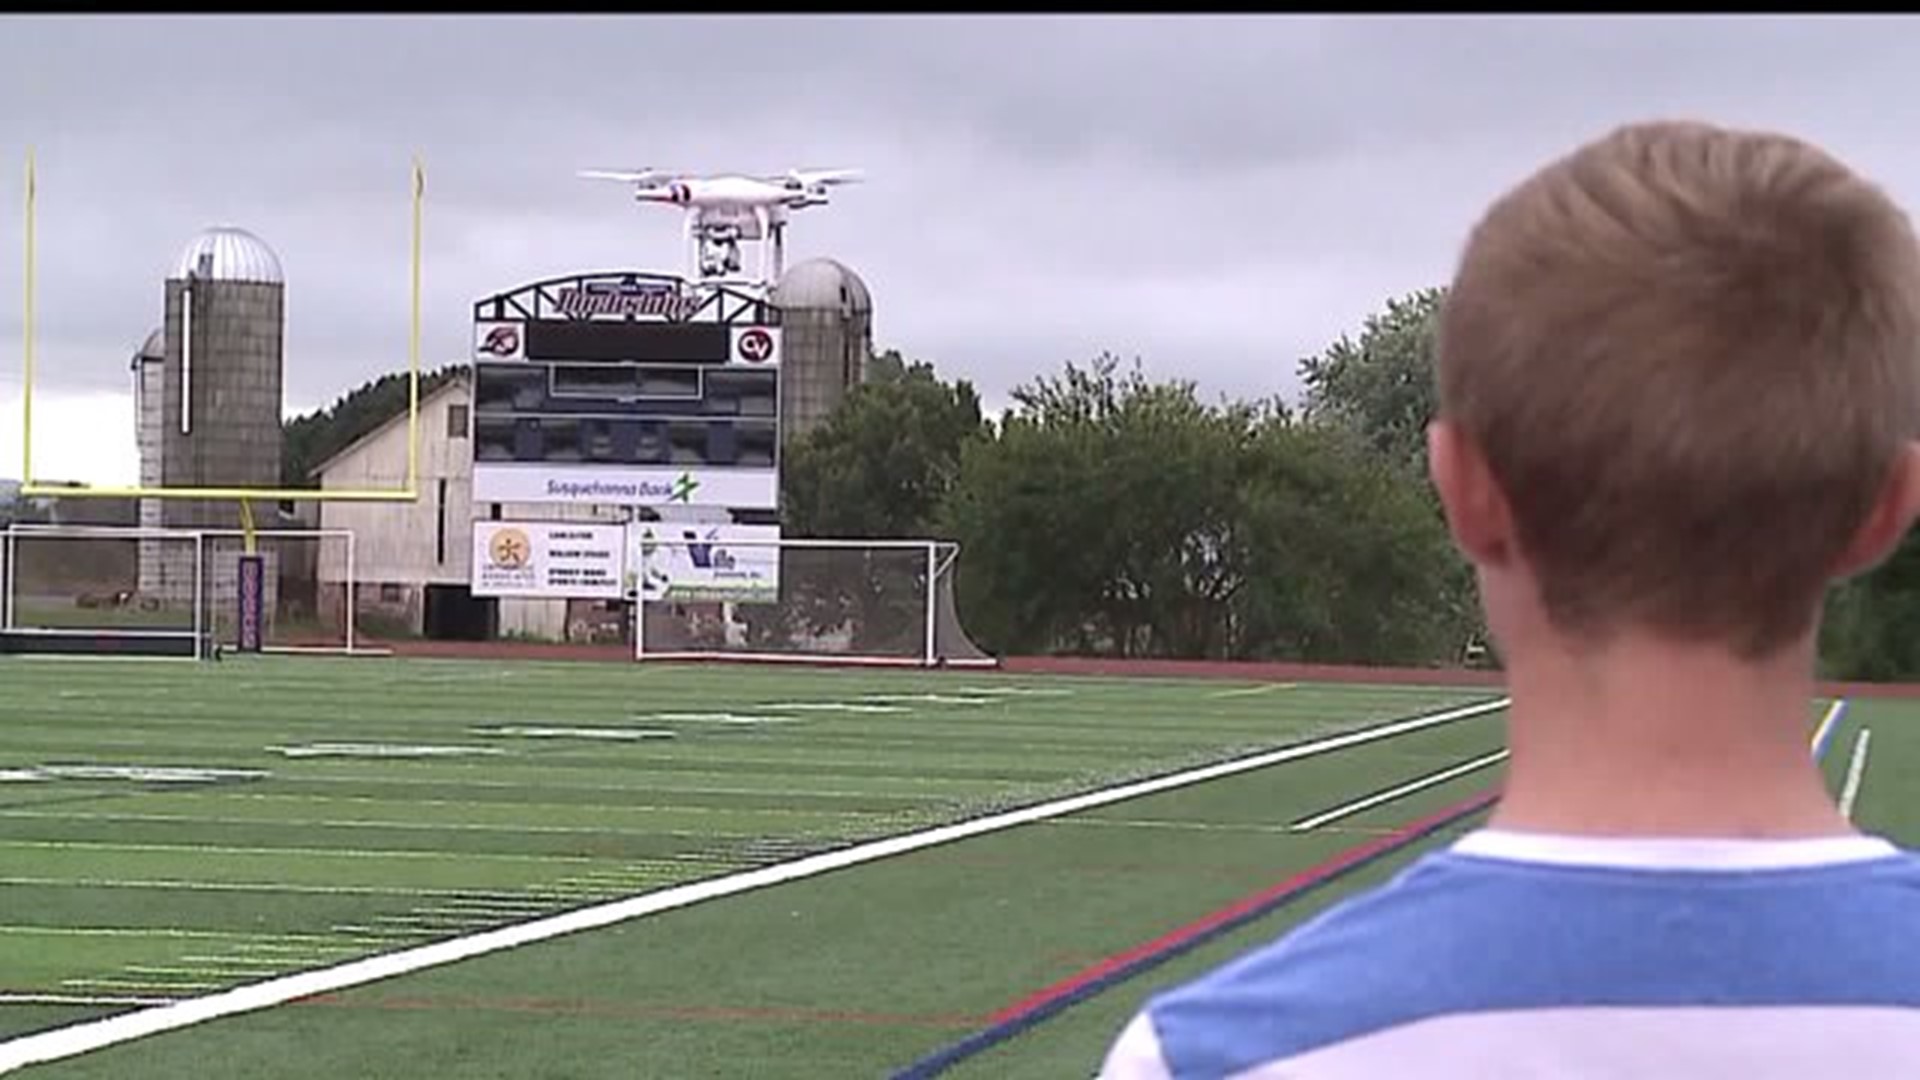 Conestoga Valley High School buzzing about drones